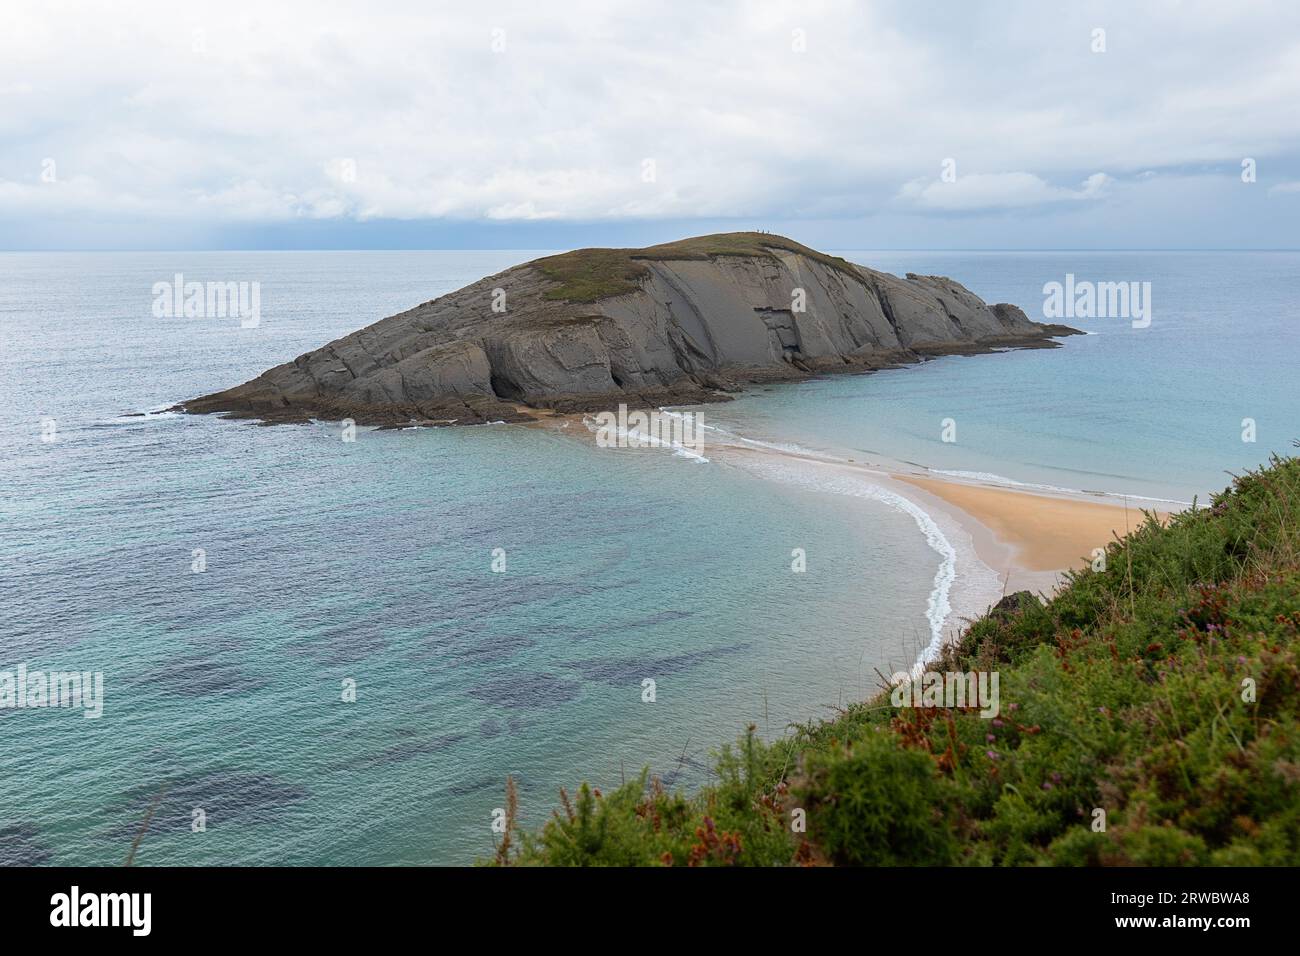 Panorama à couper le souffle de la côte rocheuse avec zone de sable et falaise dans la mer dans la journée ensoleillée d'été à Playa de Covachos en Cantabrie, Espagne Banque D'Images